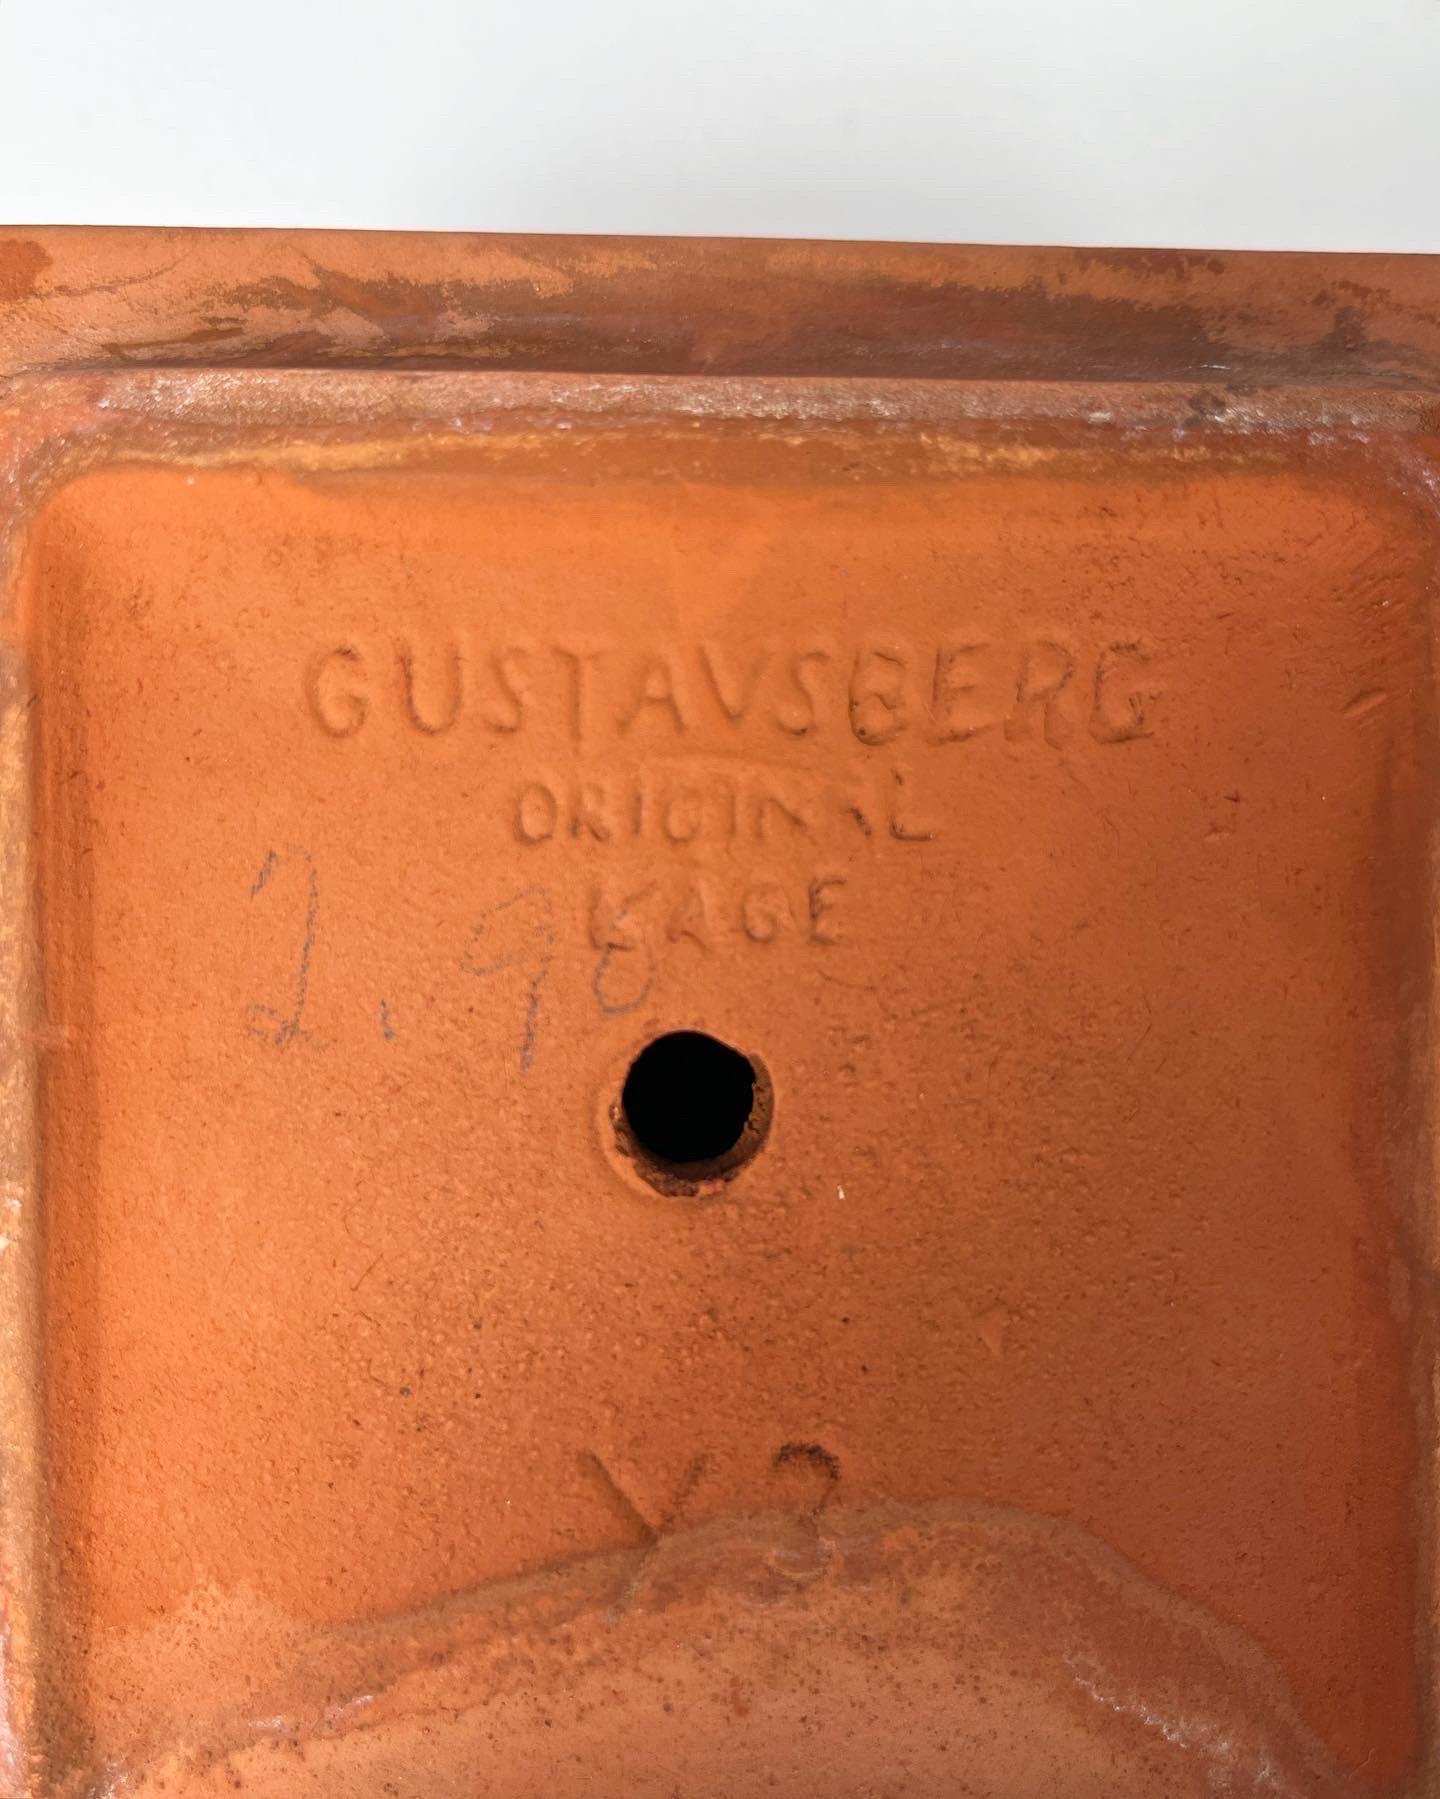 Wilhelm Kage Planter Gustavsberg Sweden Terracotta Plant Pot 1940s For Sale 2